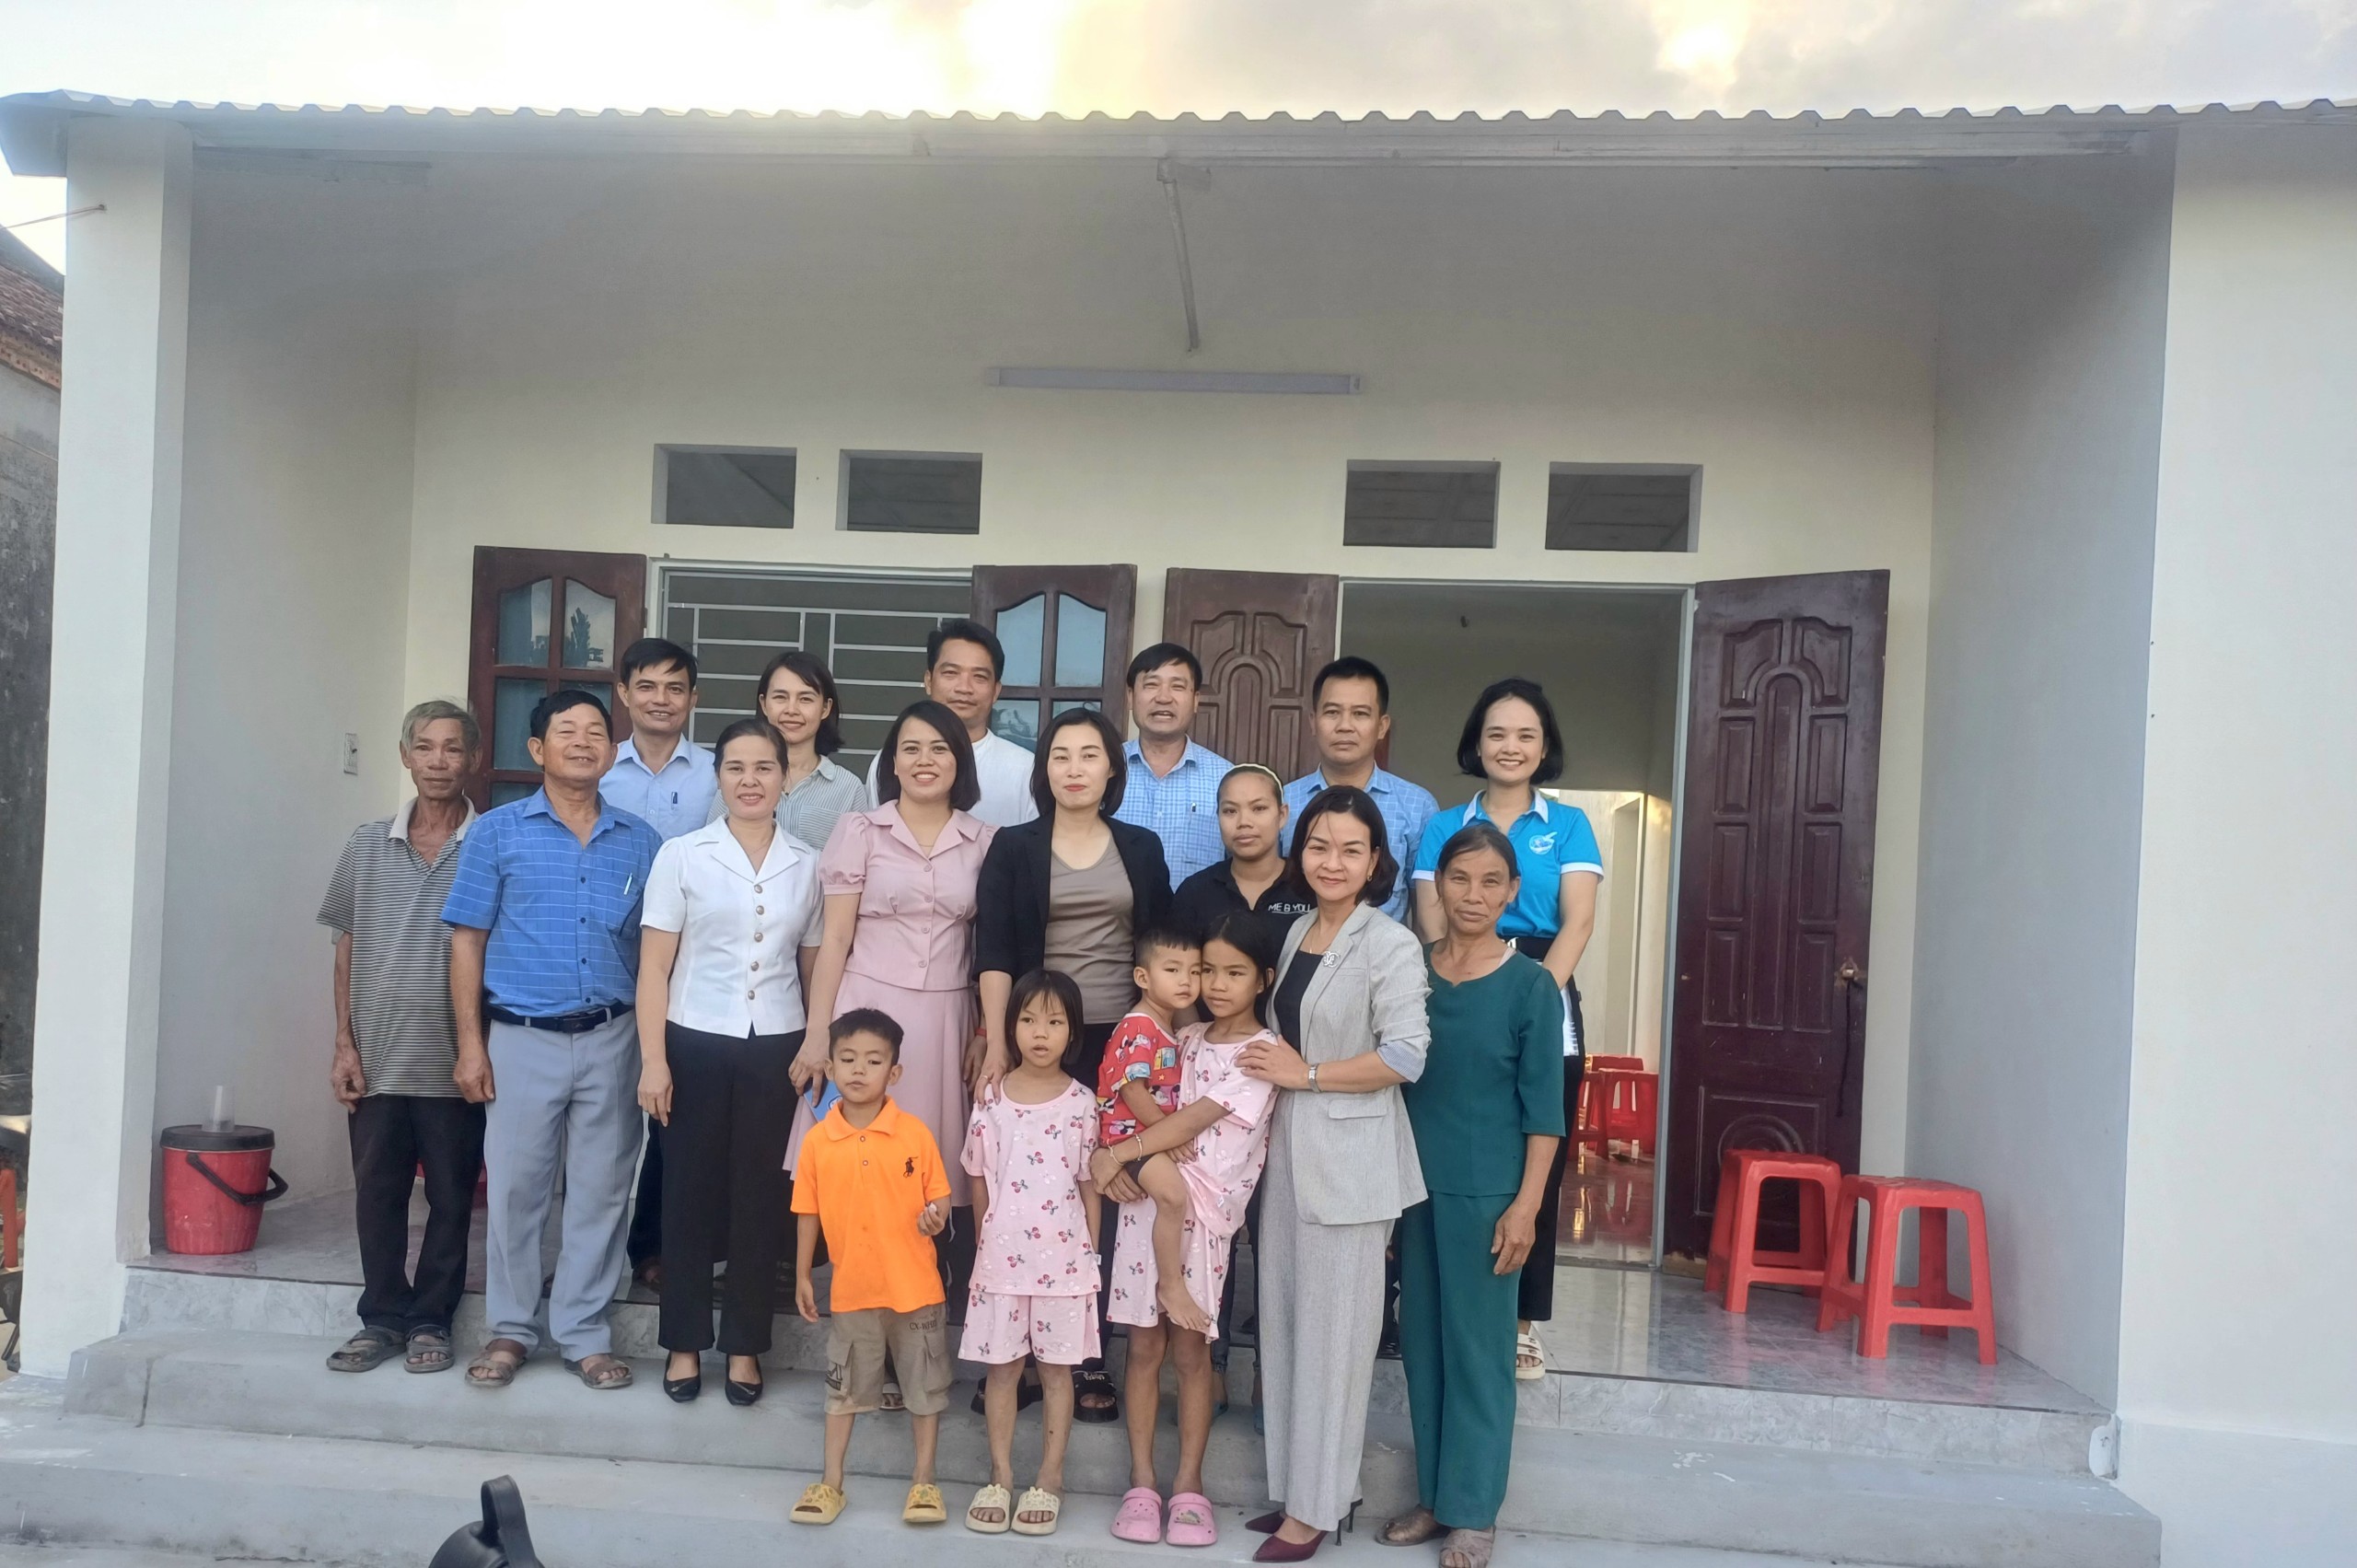 Đảng ủy - HĐND - UBND - UB MTTQ xã Quảng Định và Đoàn Thiện nguyện Quảng Xương trao tặng Nhà tình thương cho hộ gia đình phụ nữ nghèo, đơn thân.